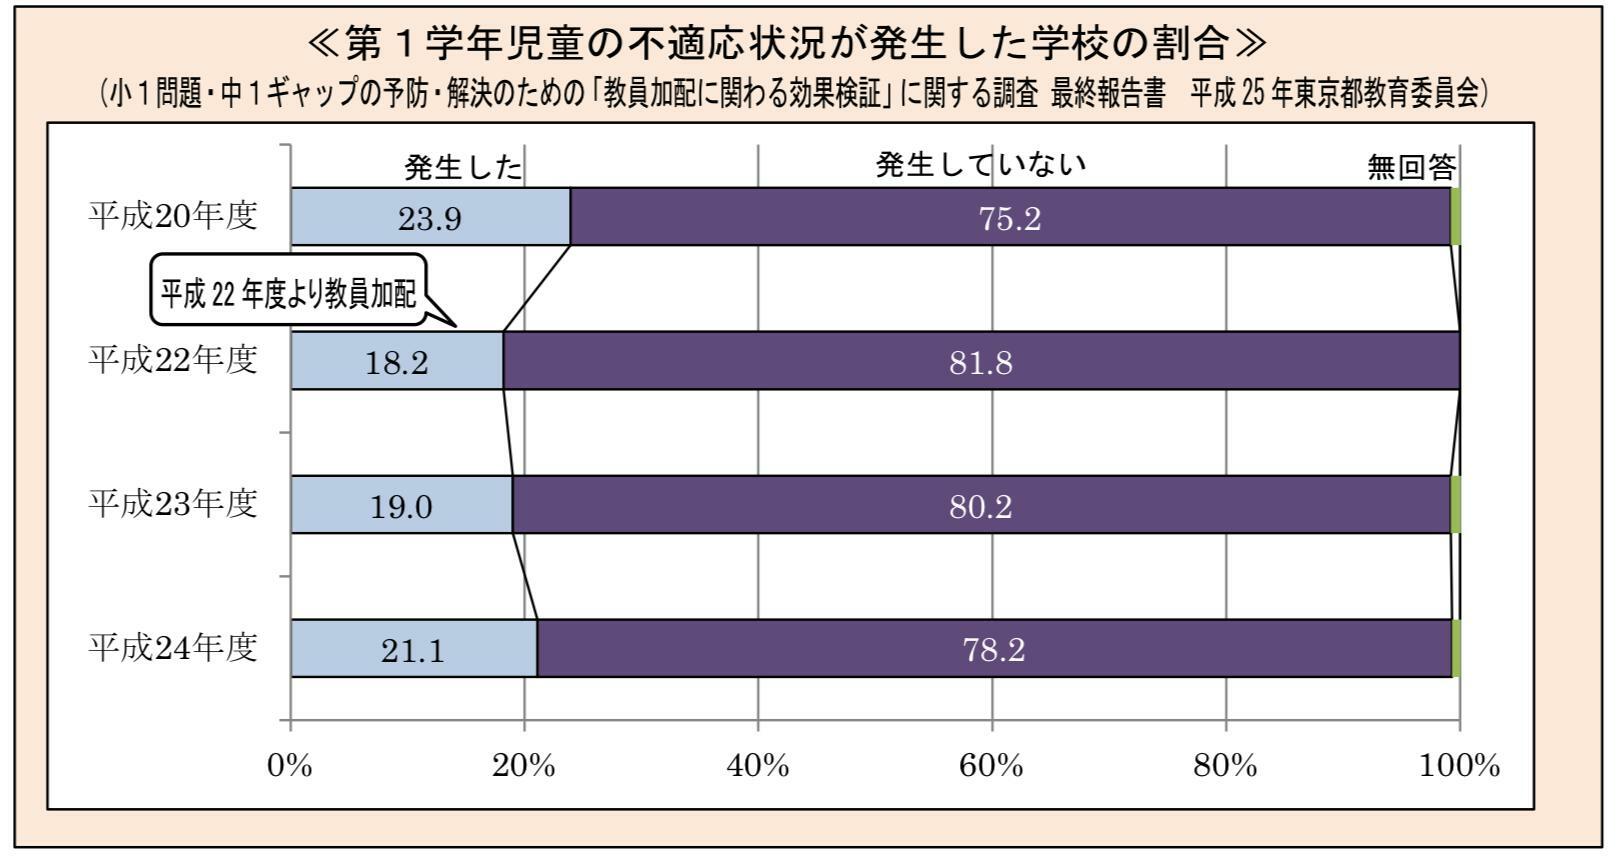 出典　小１問題・中１ギャップの予防・解決のための「教員加配に関わる効果検証」に関する調査 最終報告書 平成 25年東京都教育委員会